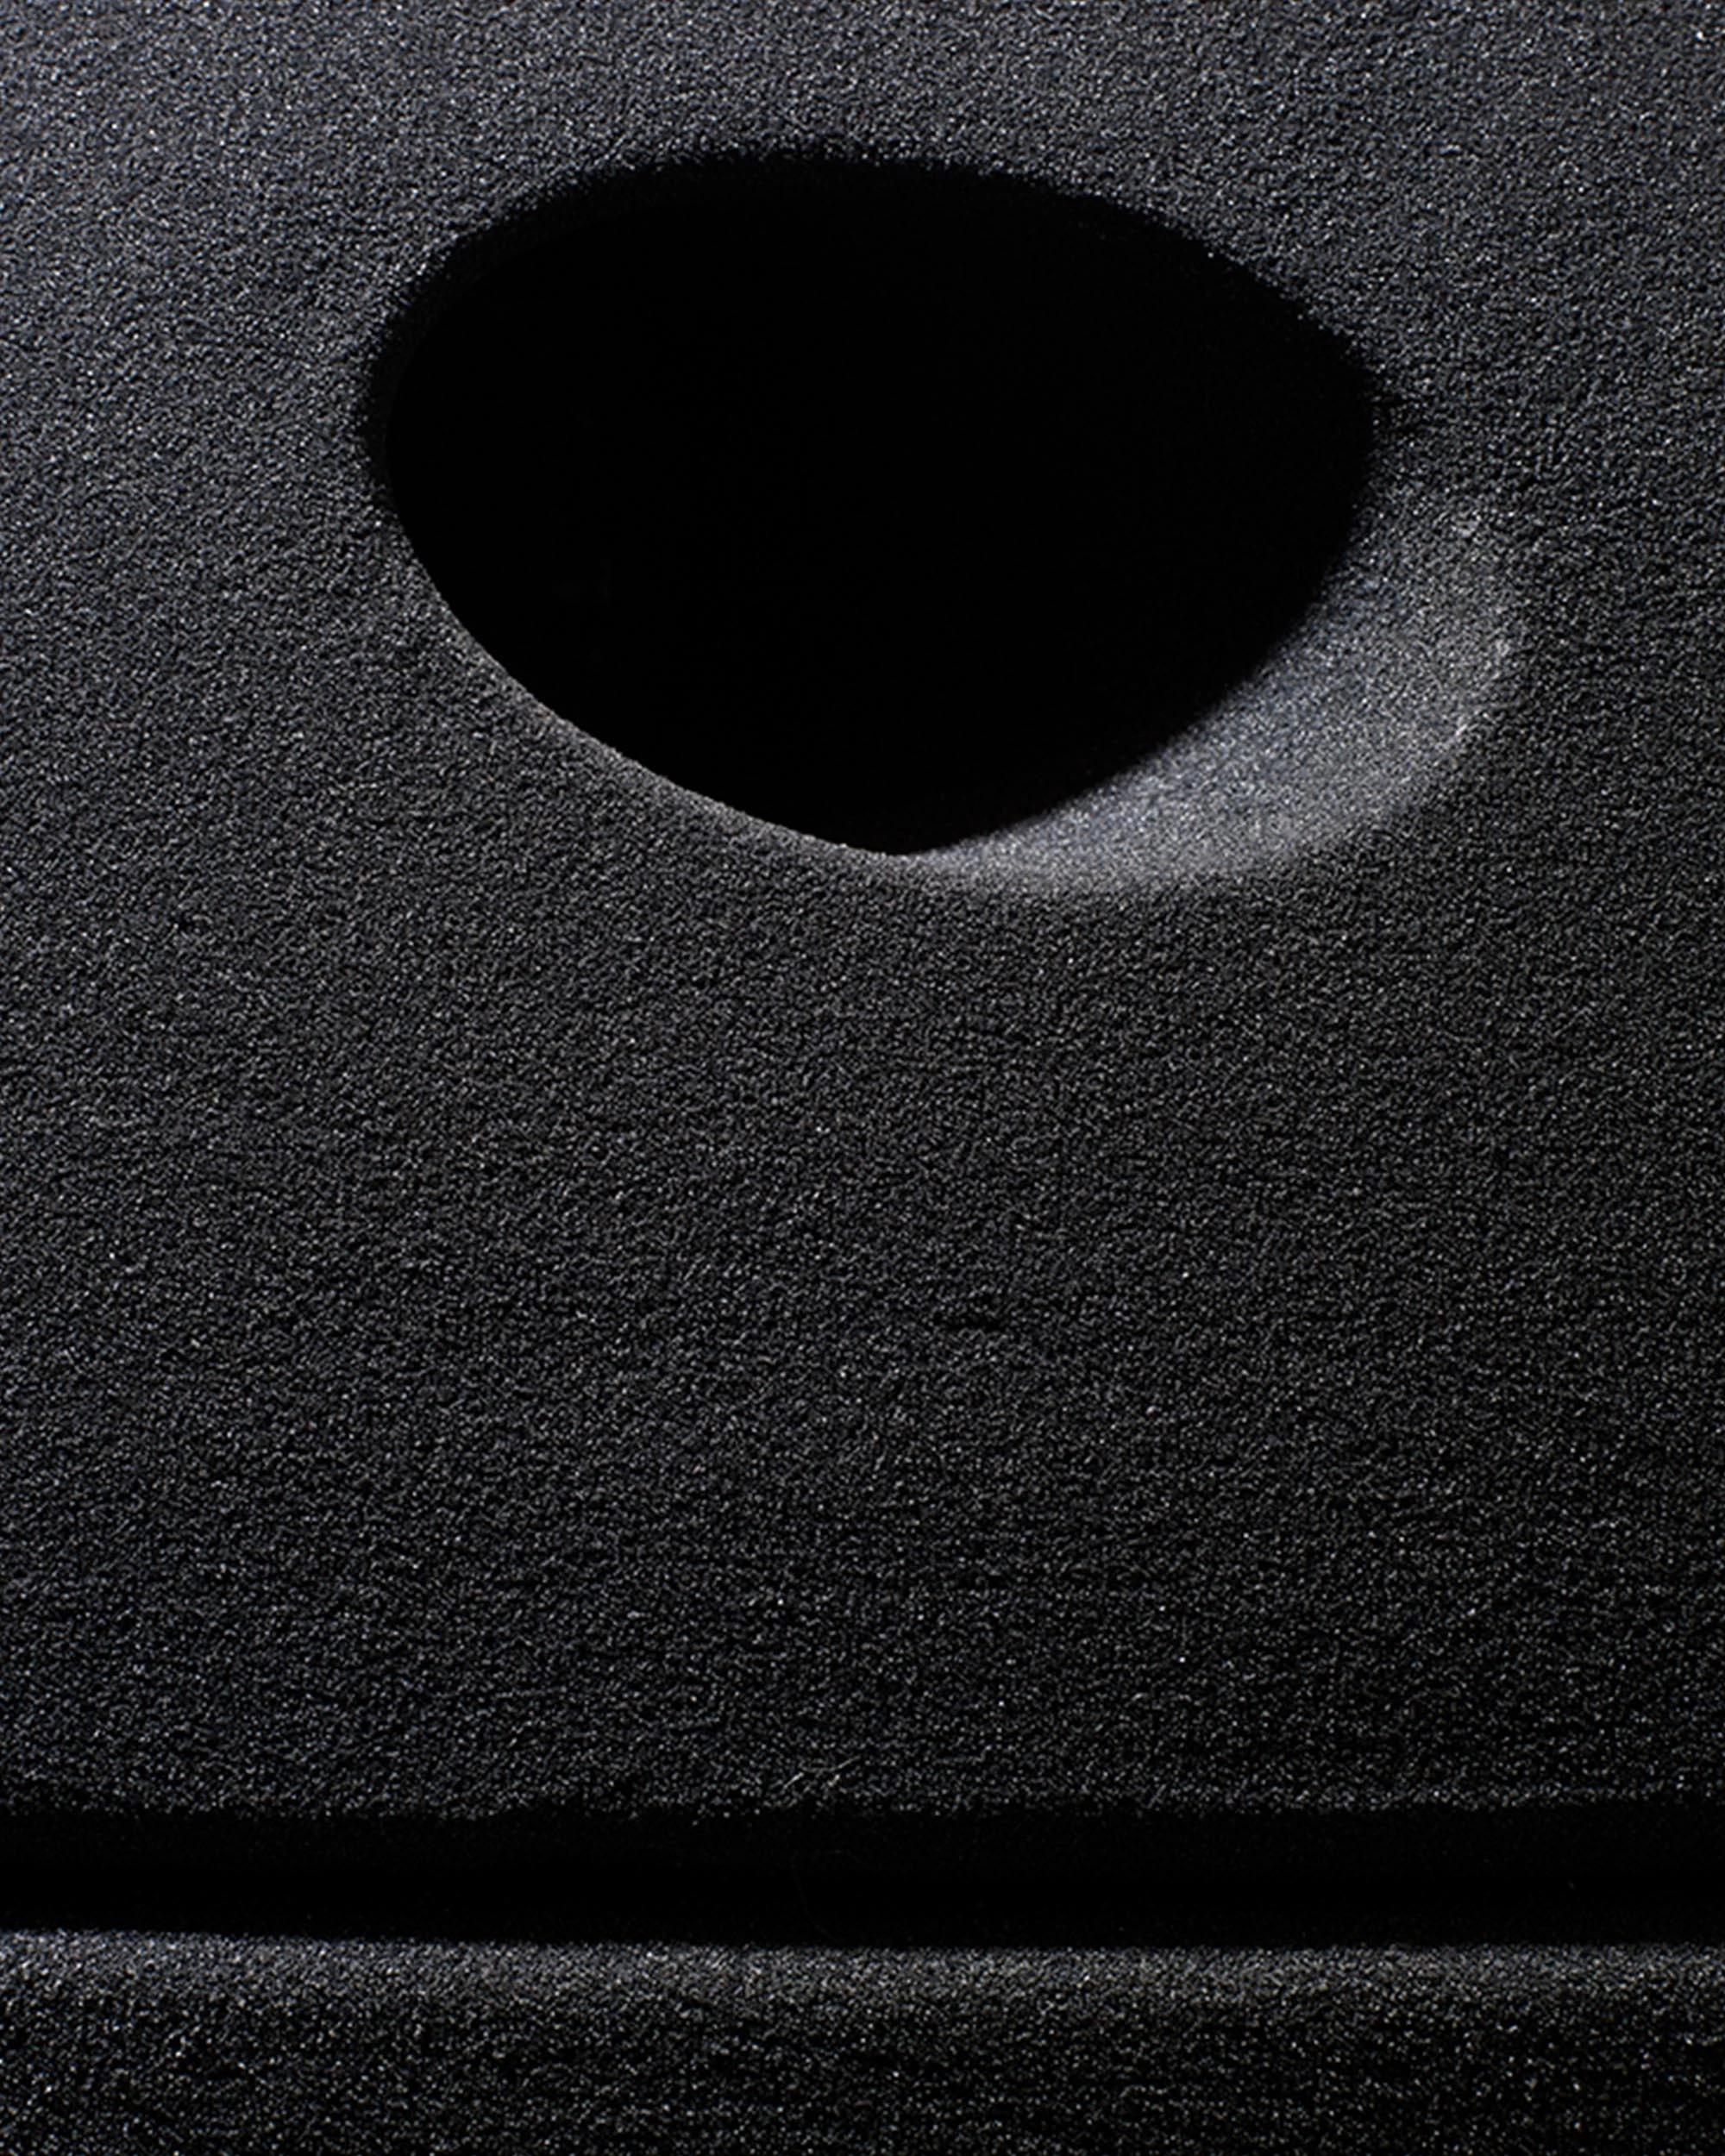 Hieronymus 3D printed sand - Konstantin Grcic - Seating - Galerie kreo